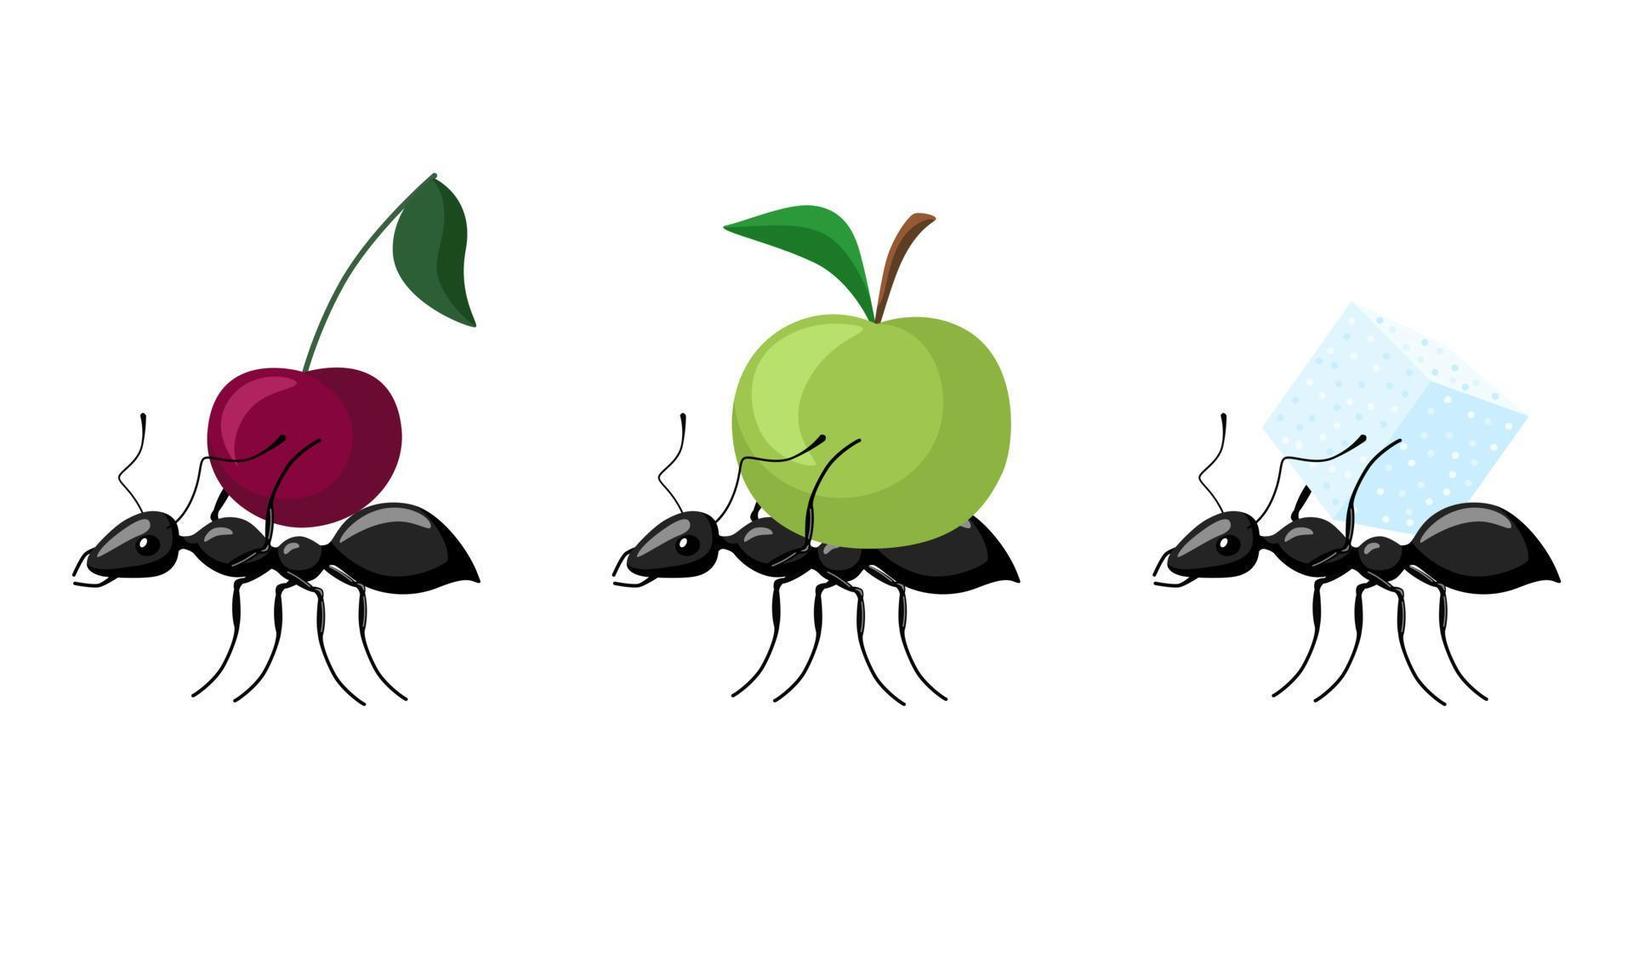 définir des fourmis transportant différents fruits isolés sur fond blanc. colonie de fourmis transportant pomme, cerise, sucre et marchant vers la fourmilière. vecteur